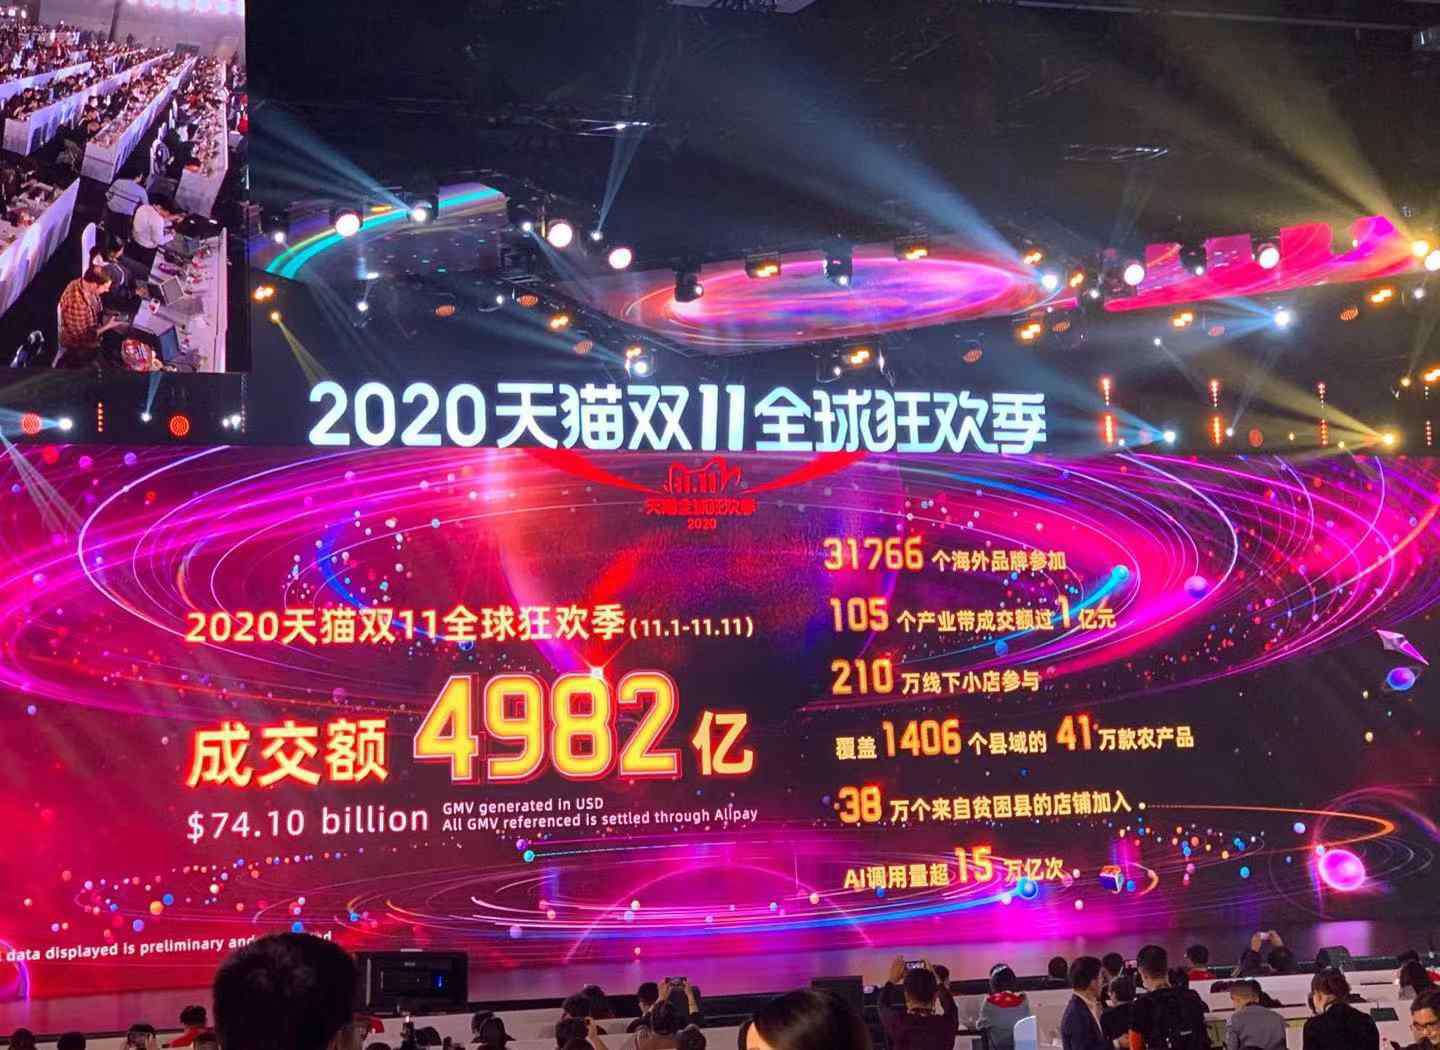 兔子直播 天猫双11成交额破4982亿 中国双11正在让全球“动起来”